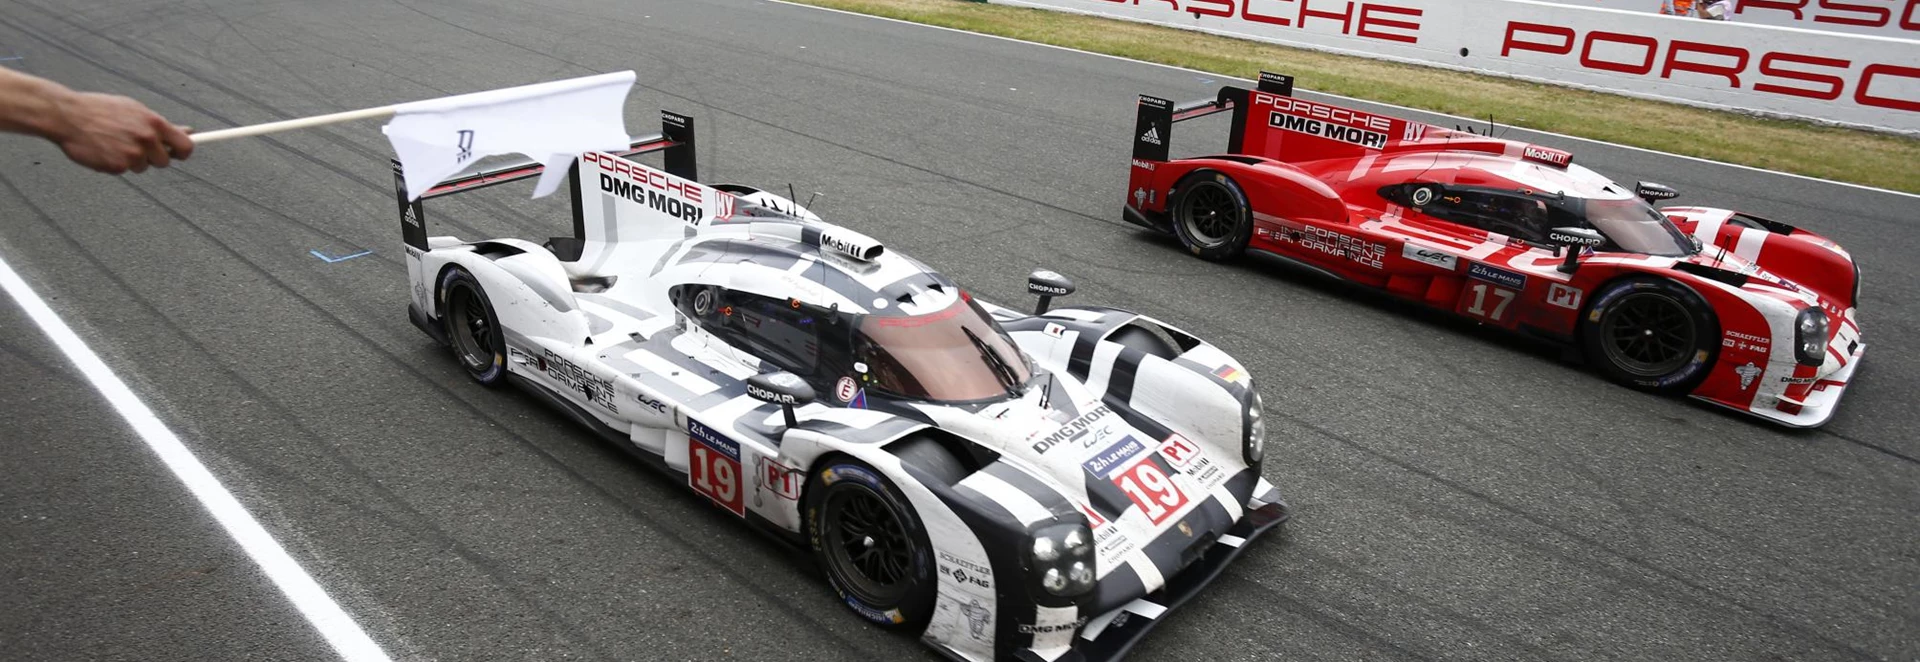 Le Mans winners Porsche set to quit LMP1 